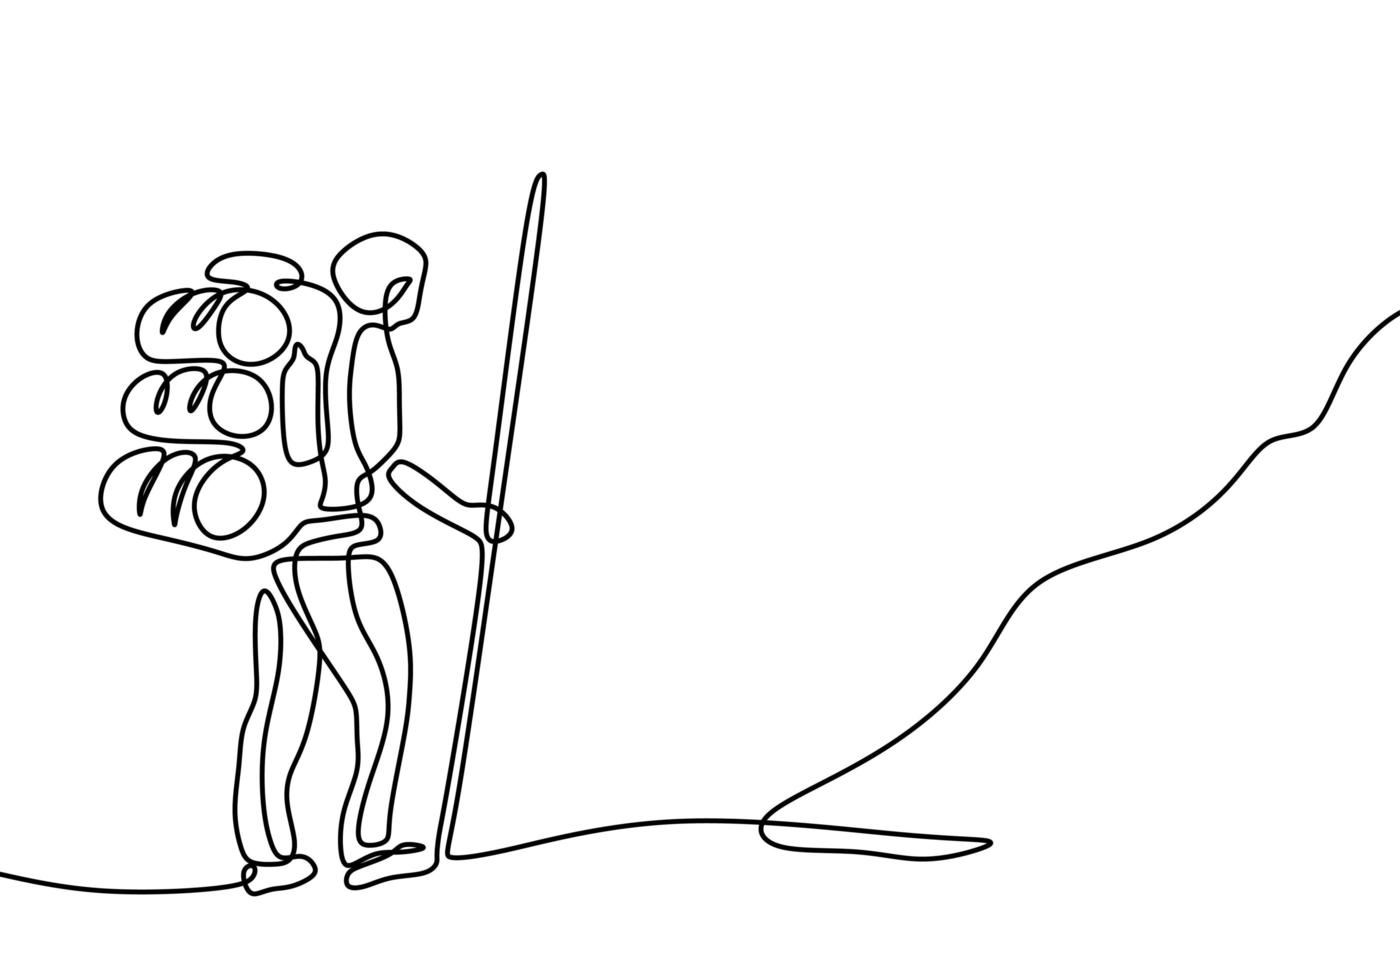 dibujo de una línea de excursionista con mochila. Persona continua dibujada a mano haciendo senderismo, caminando por la colina. vector